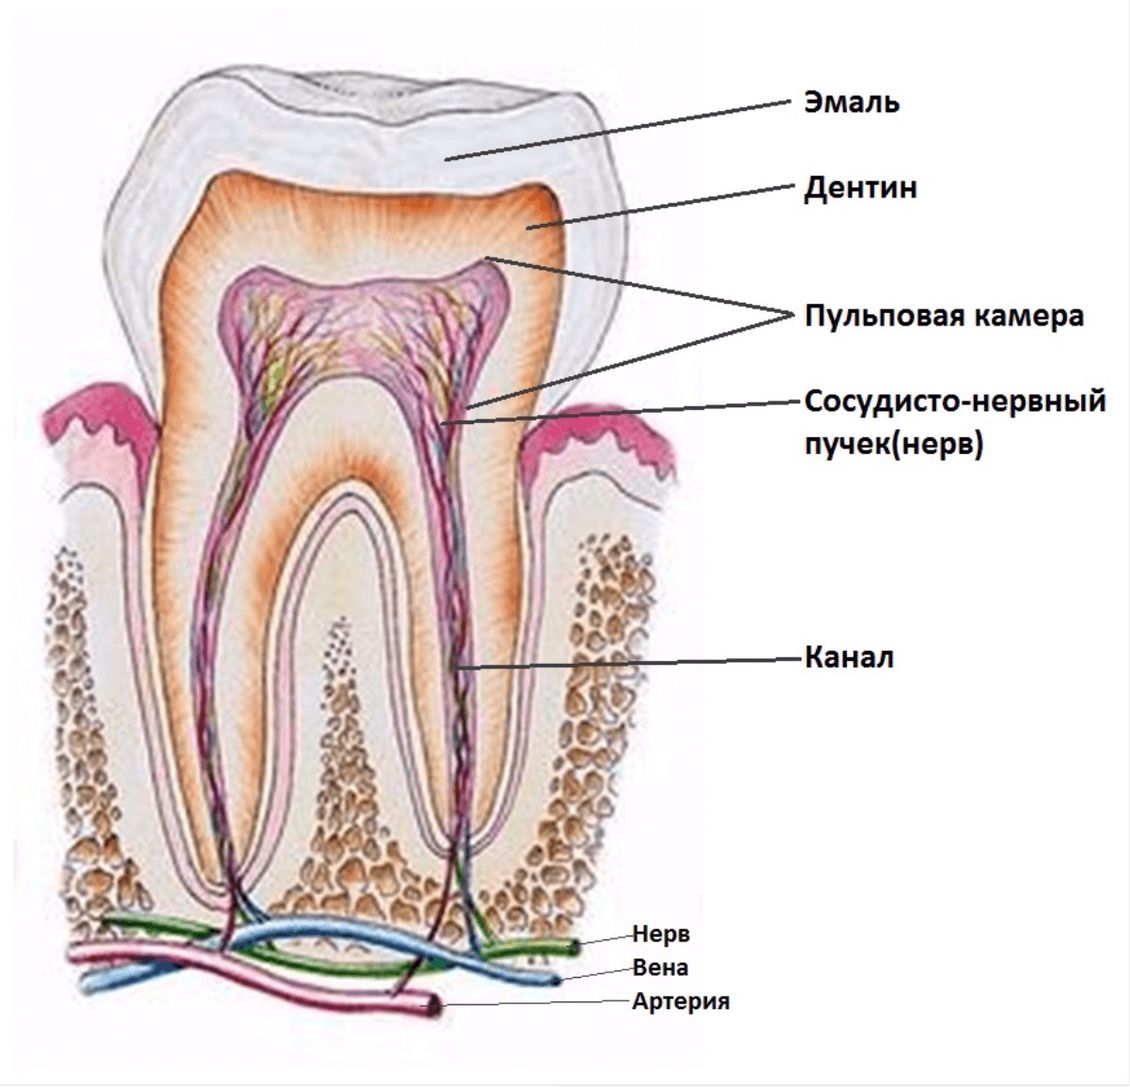 Зуб это. Зубная пульпа строение зуба. Зубной нерв строение зуба. Пульпа зуба анатомия зуба.